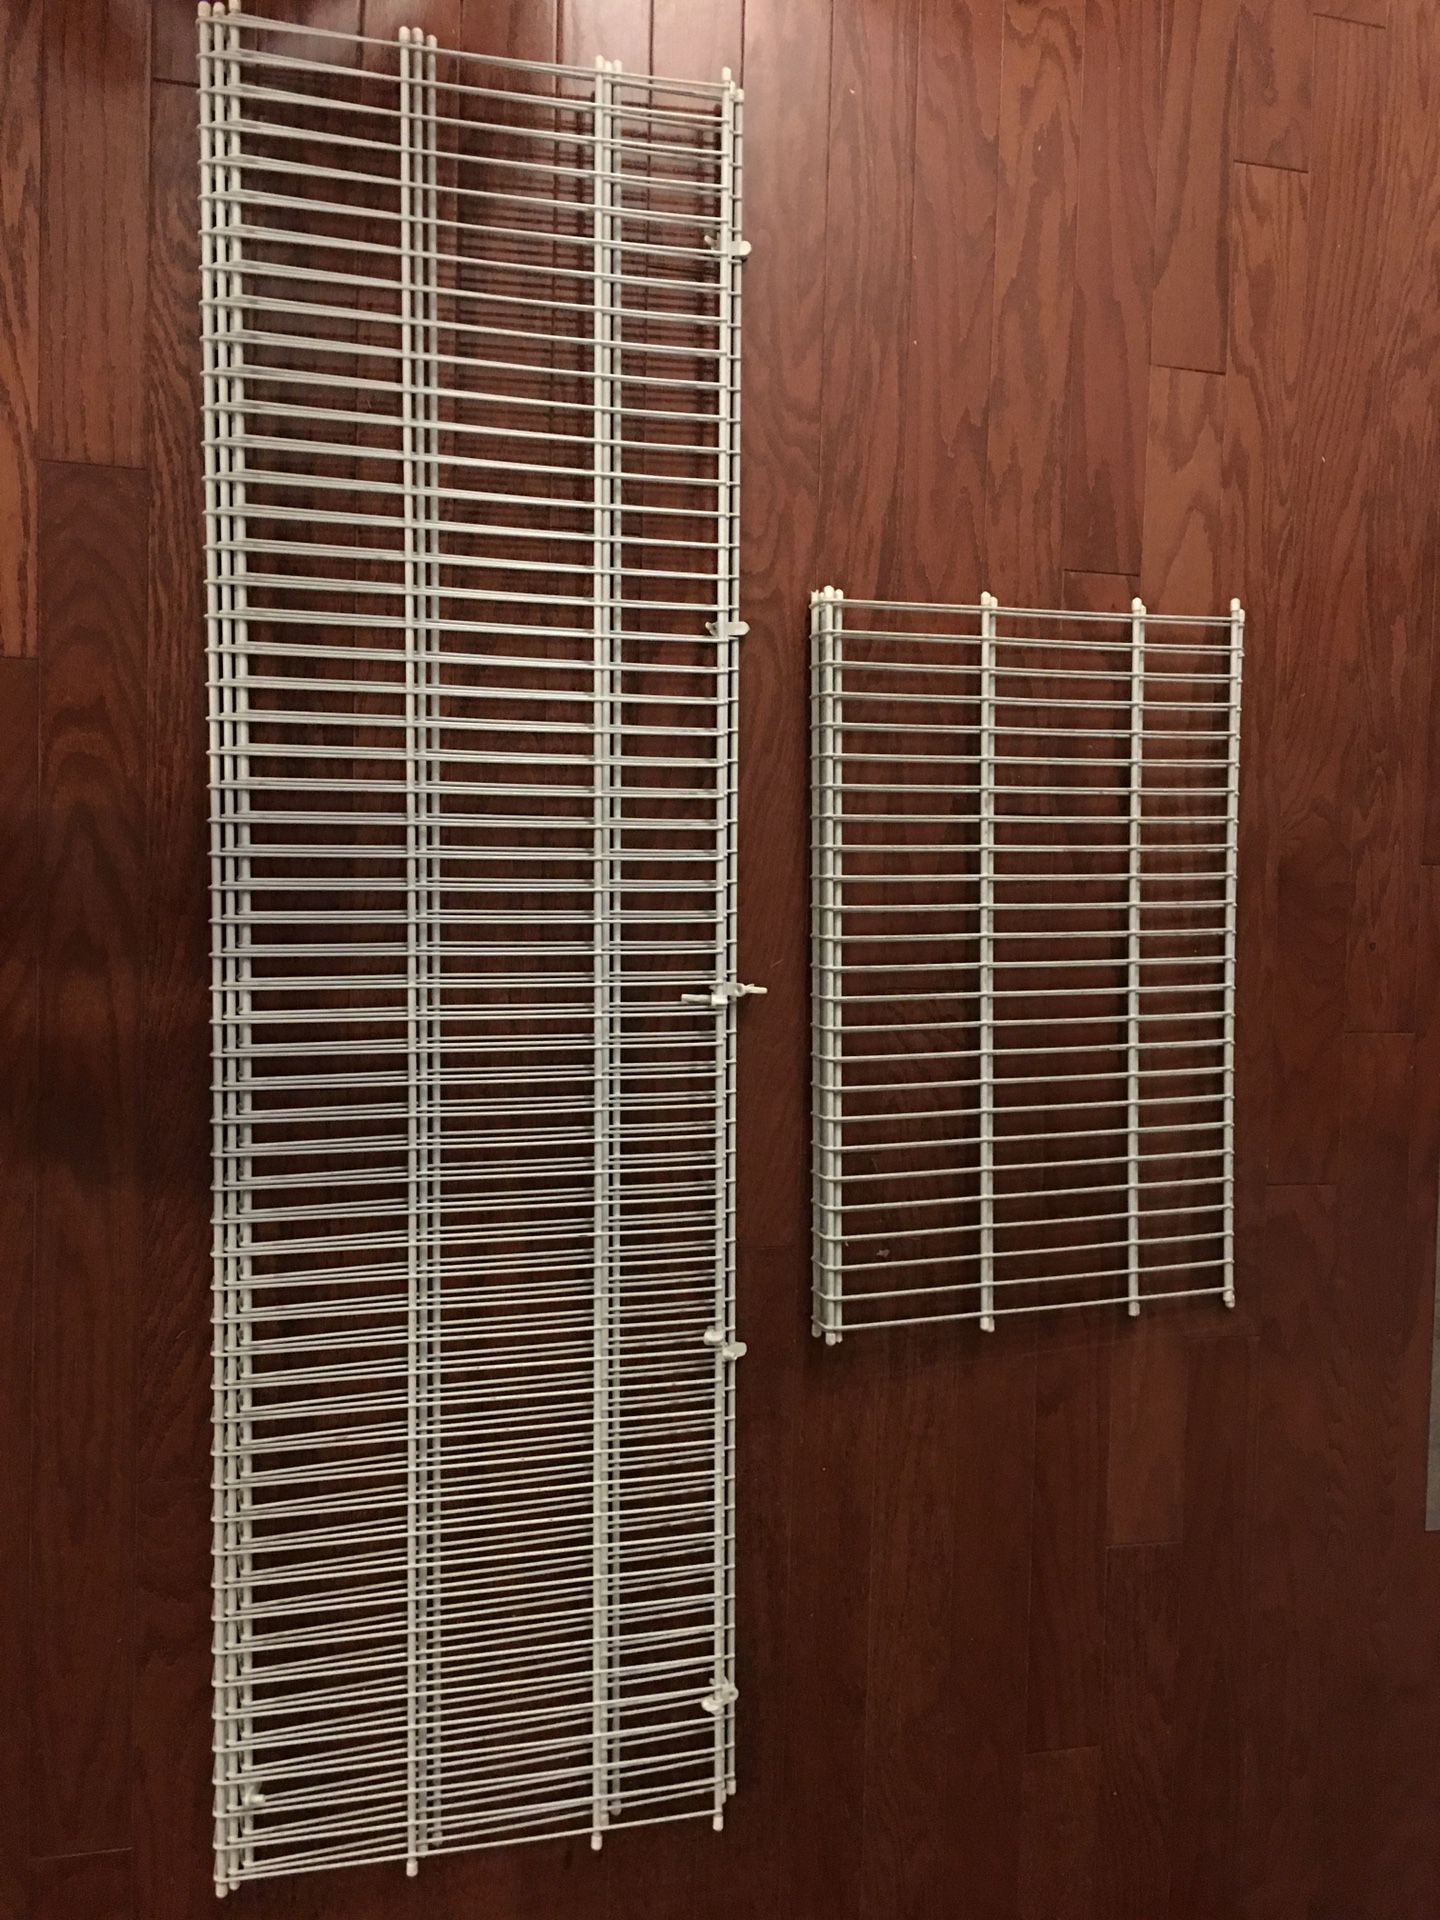 ClosetMaid wire closet shelves. 2 -25” and 3 -56”. No brackets.